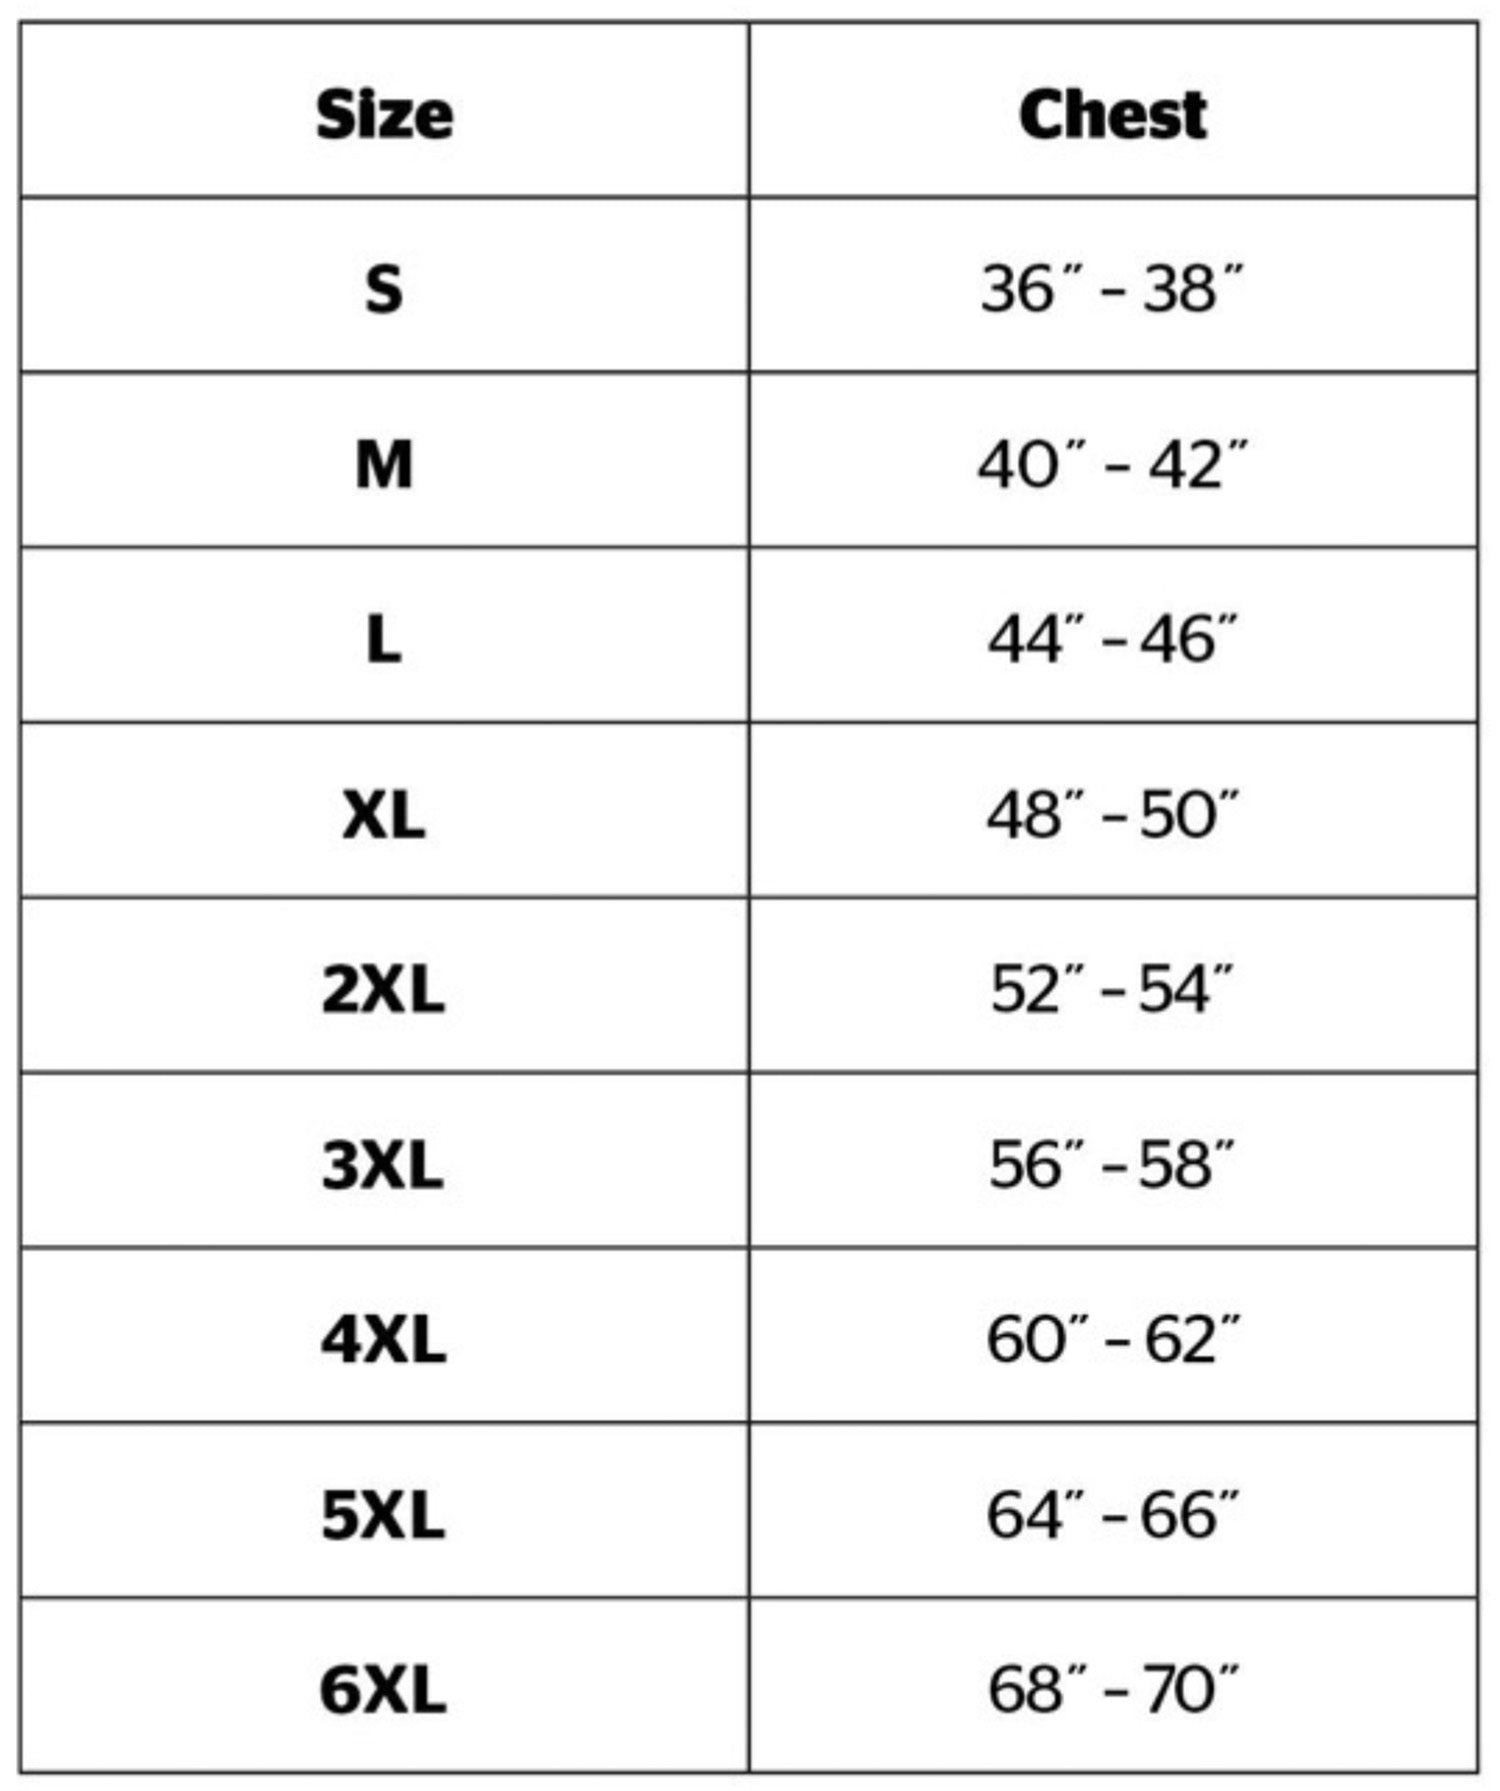 Men's Shirt Size Chart